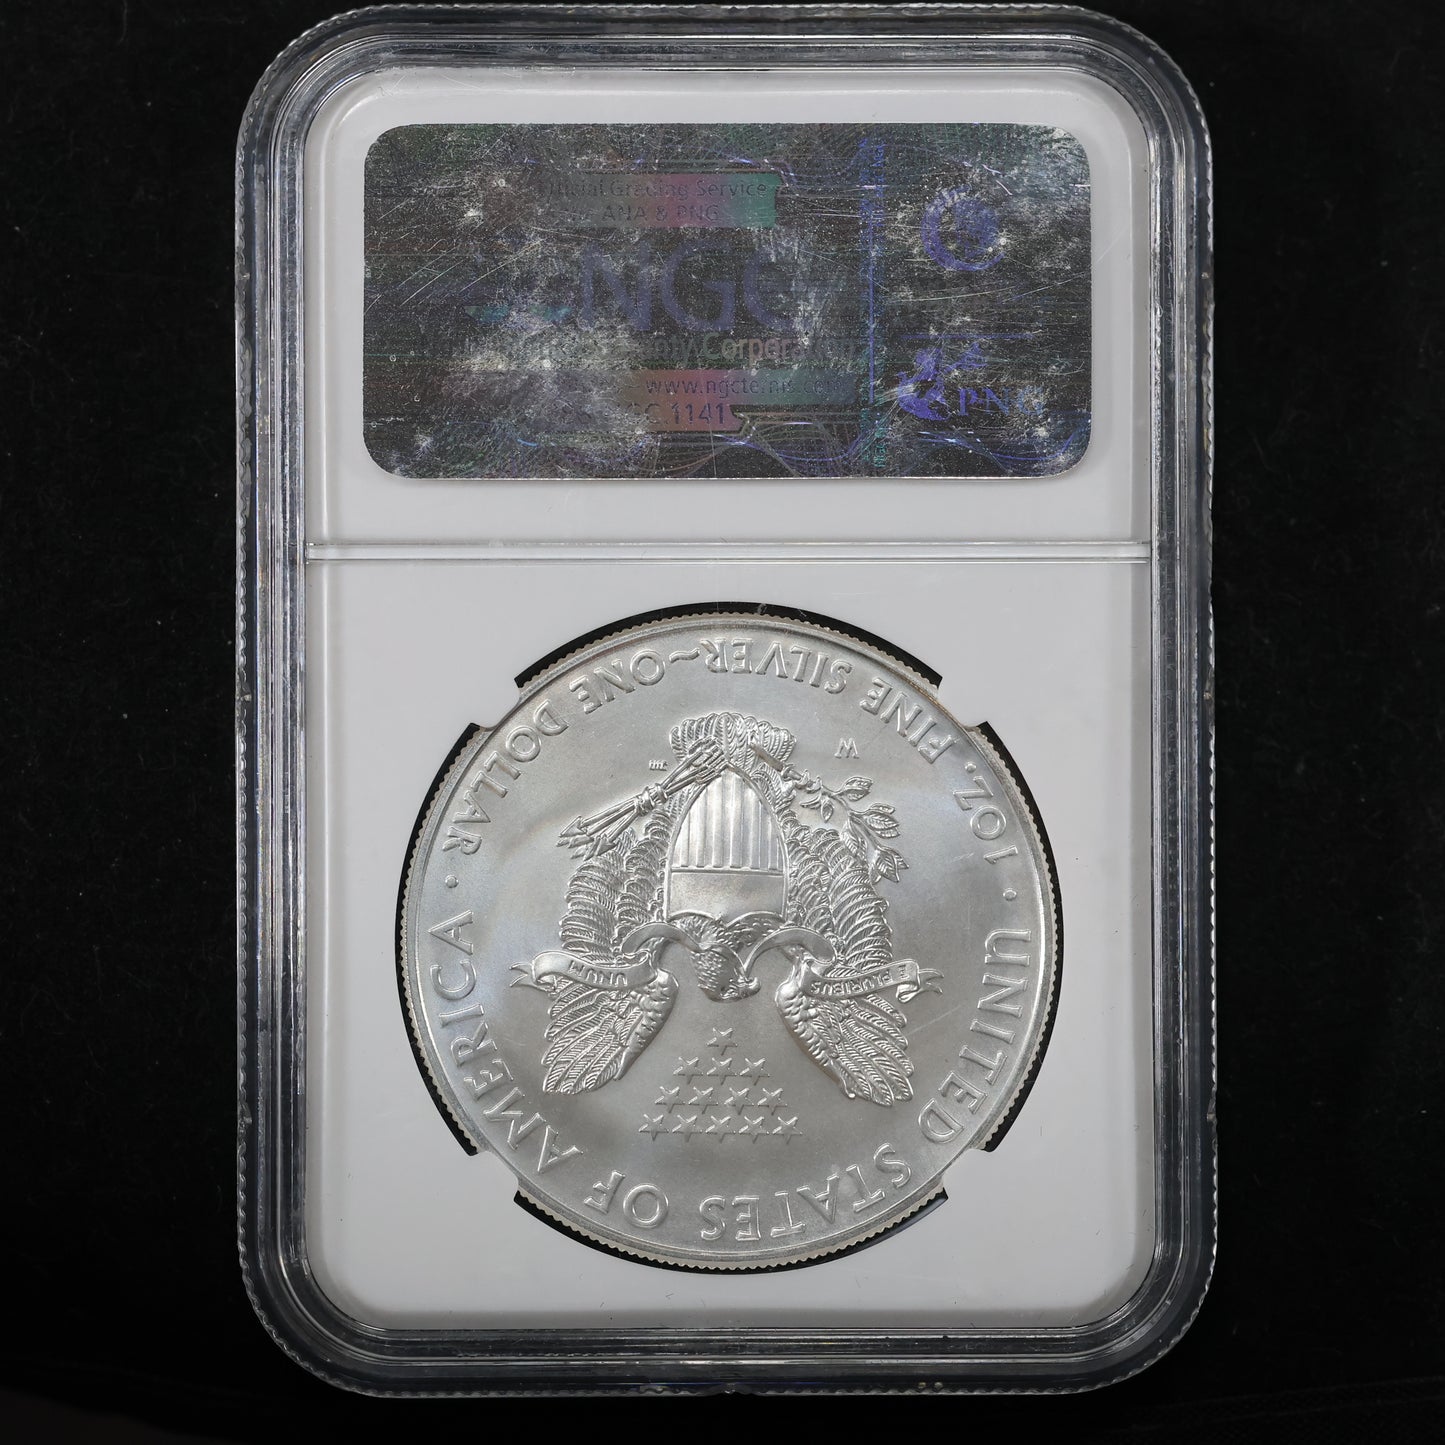 2011 W American Silver Eagle $1 .999 Fine Silver - NGC MS 69 25th Anniv.